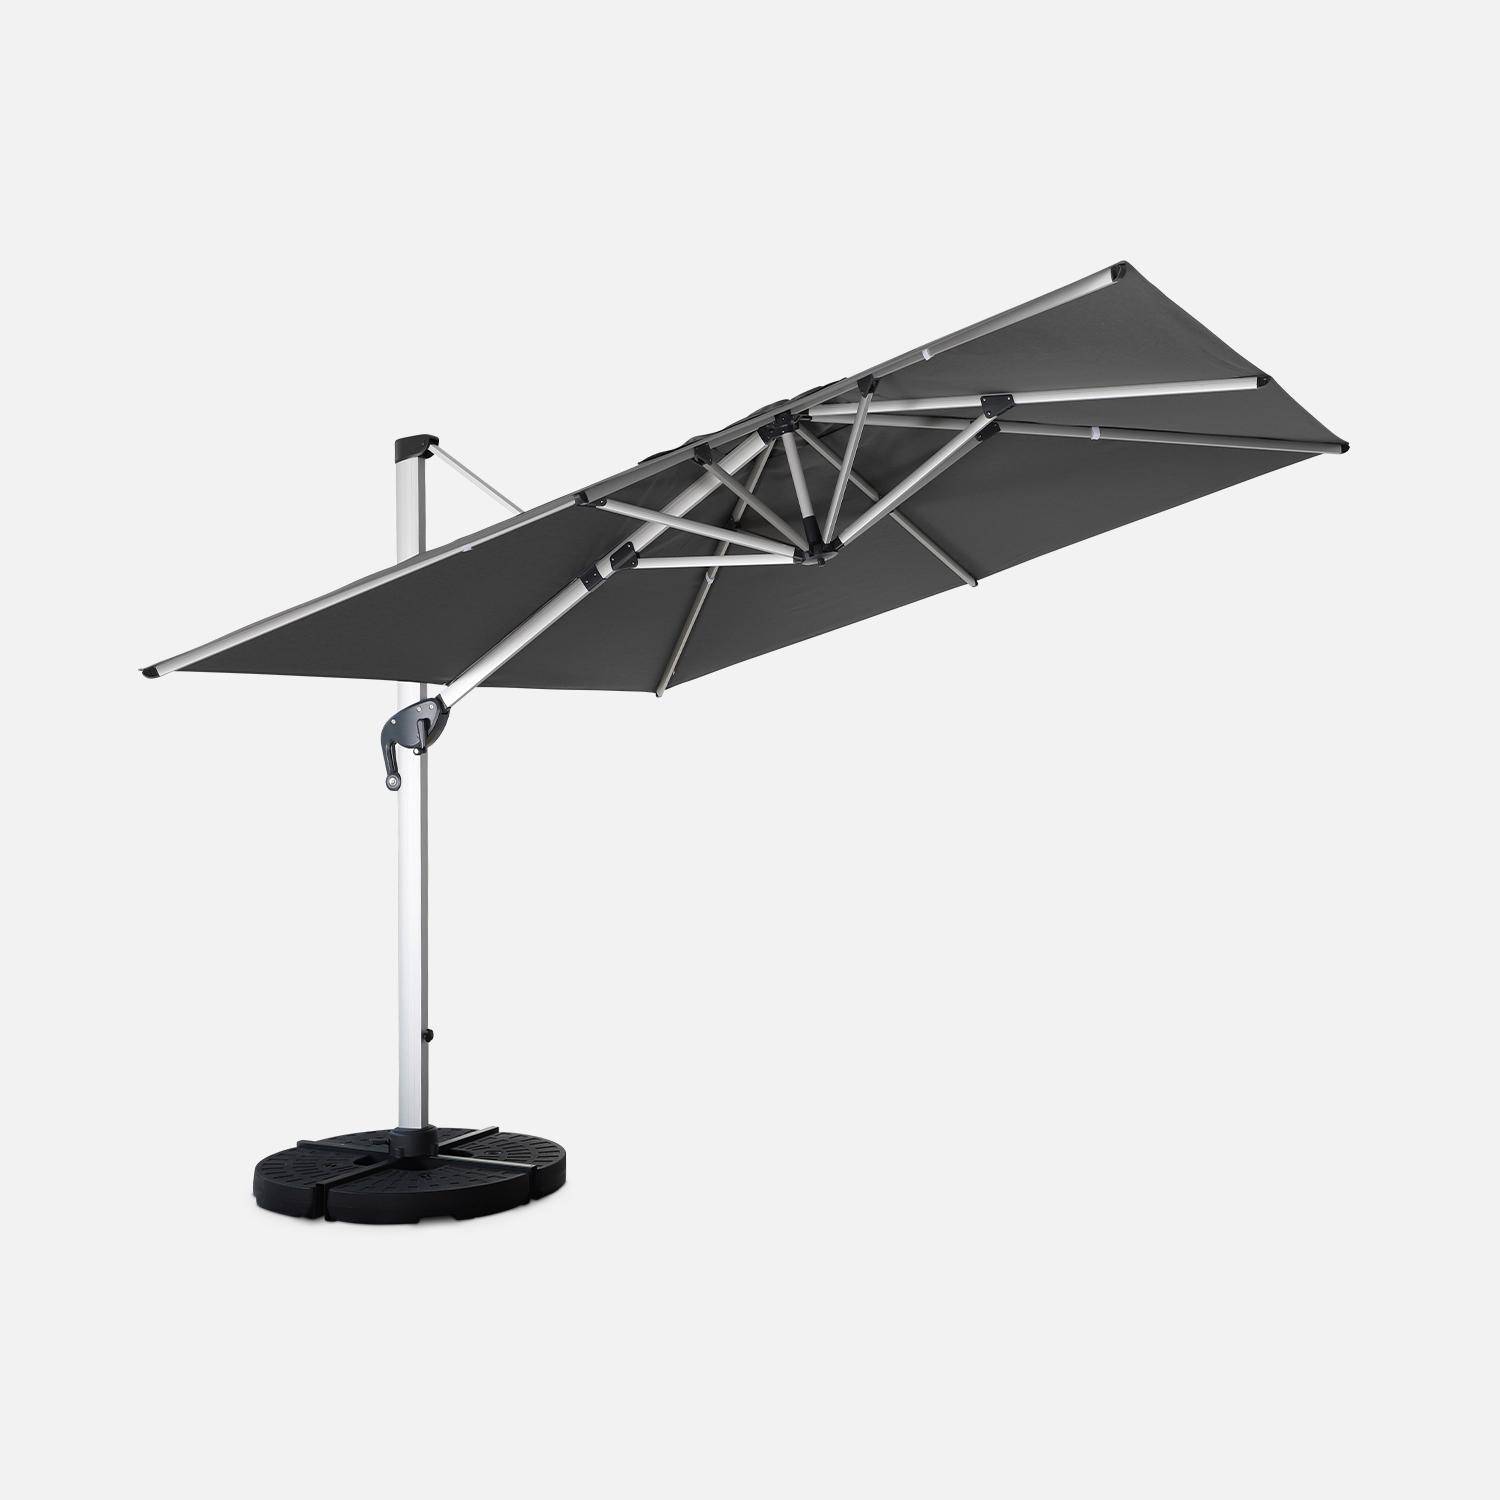 Topkwaliteit parasol, 3x3m, grijs polyester doek, geanodiseerd aluminium frame, hoes inbegrepen,sweeek,Photo3